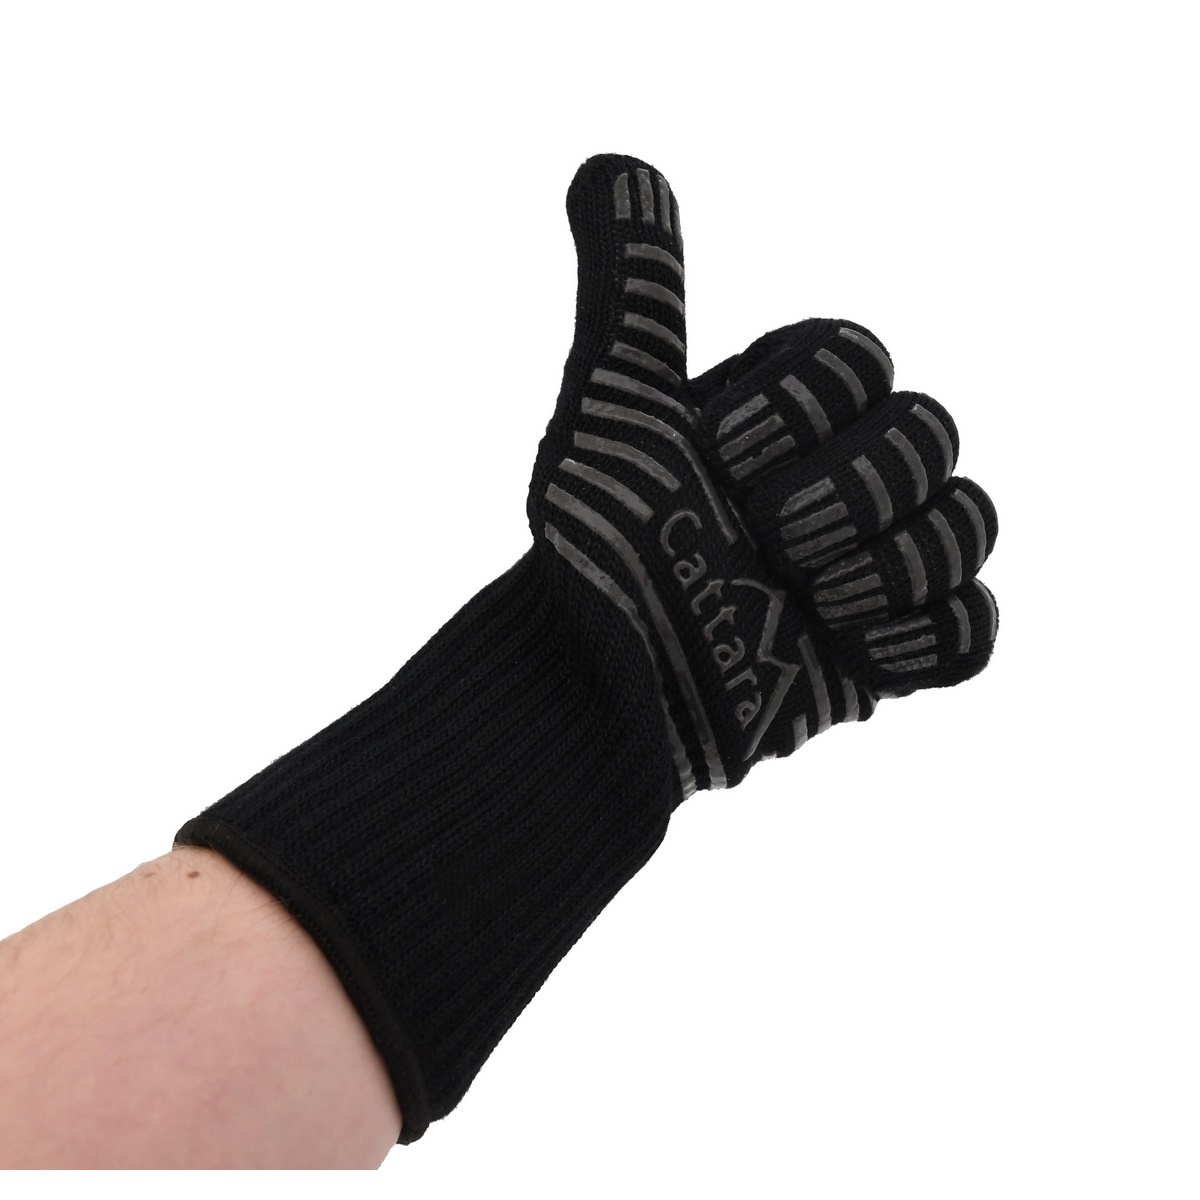 Cattara Grilovací rukavice Heat grip, univerzální velikost